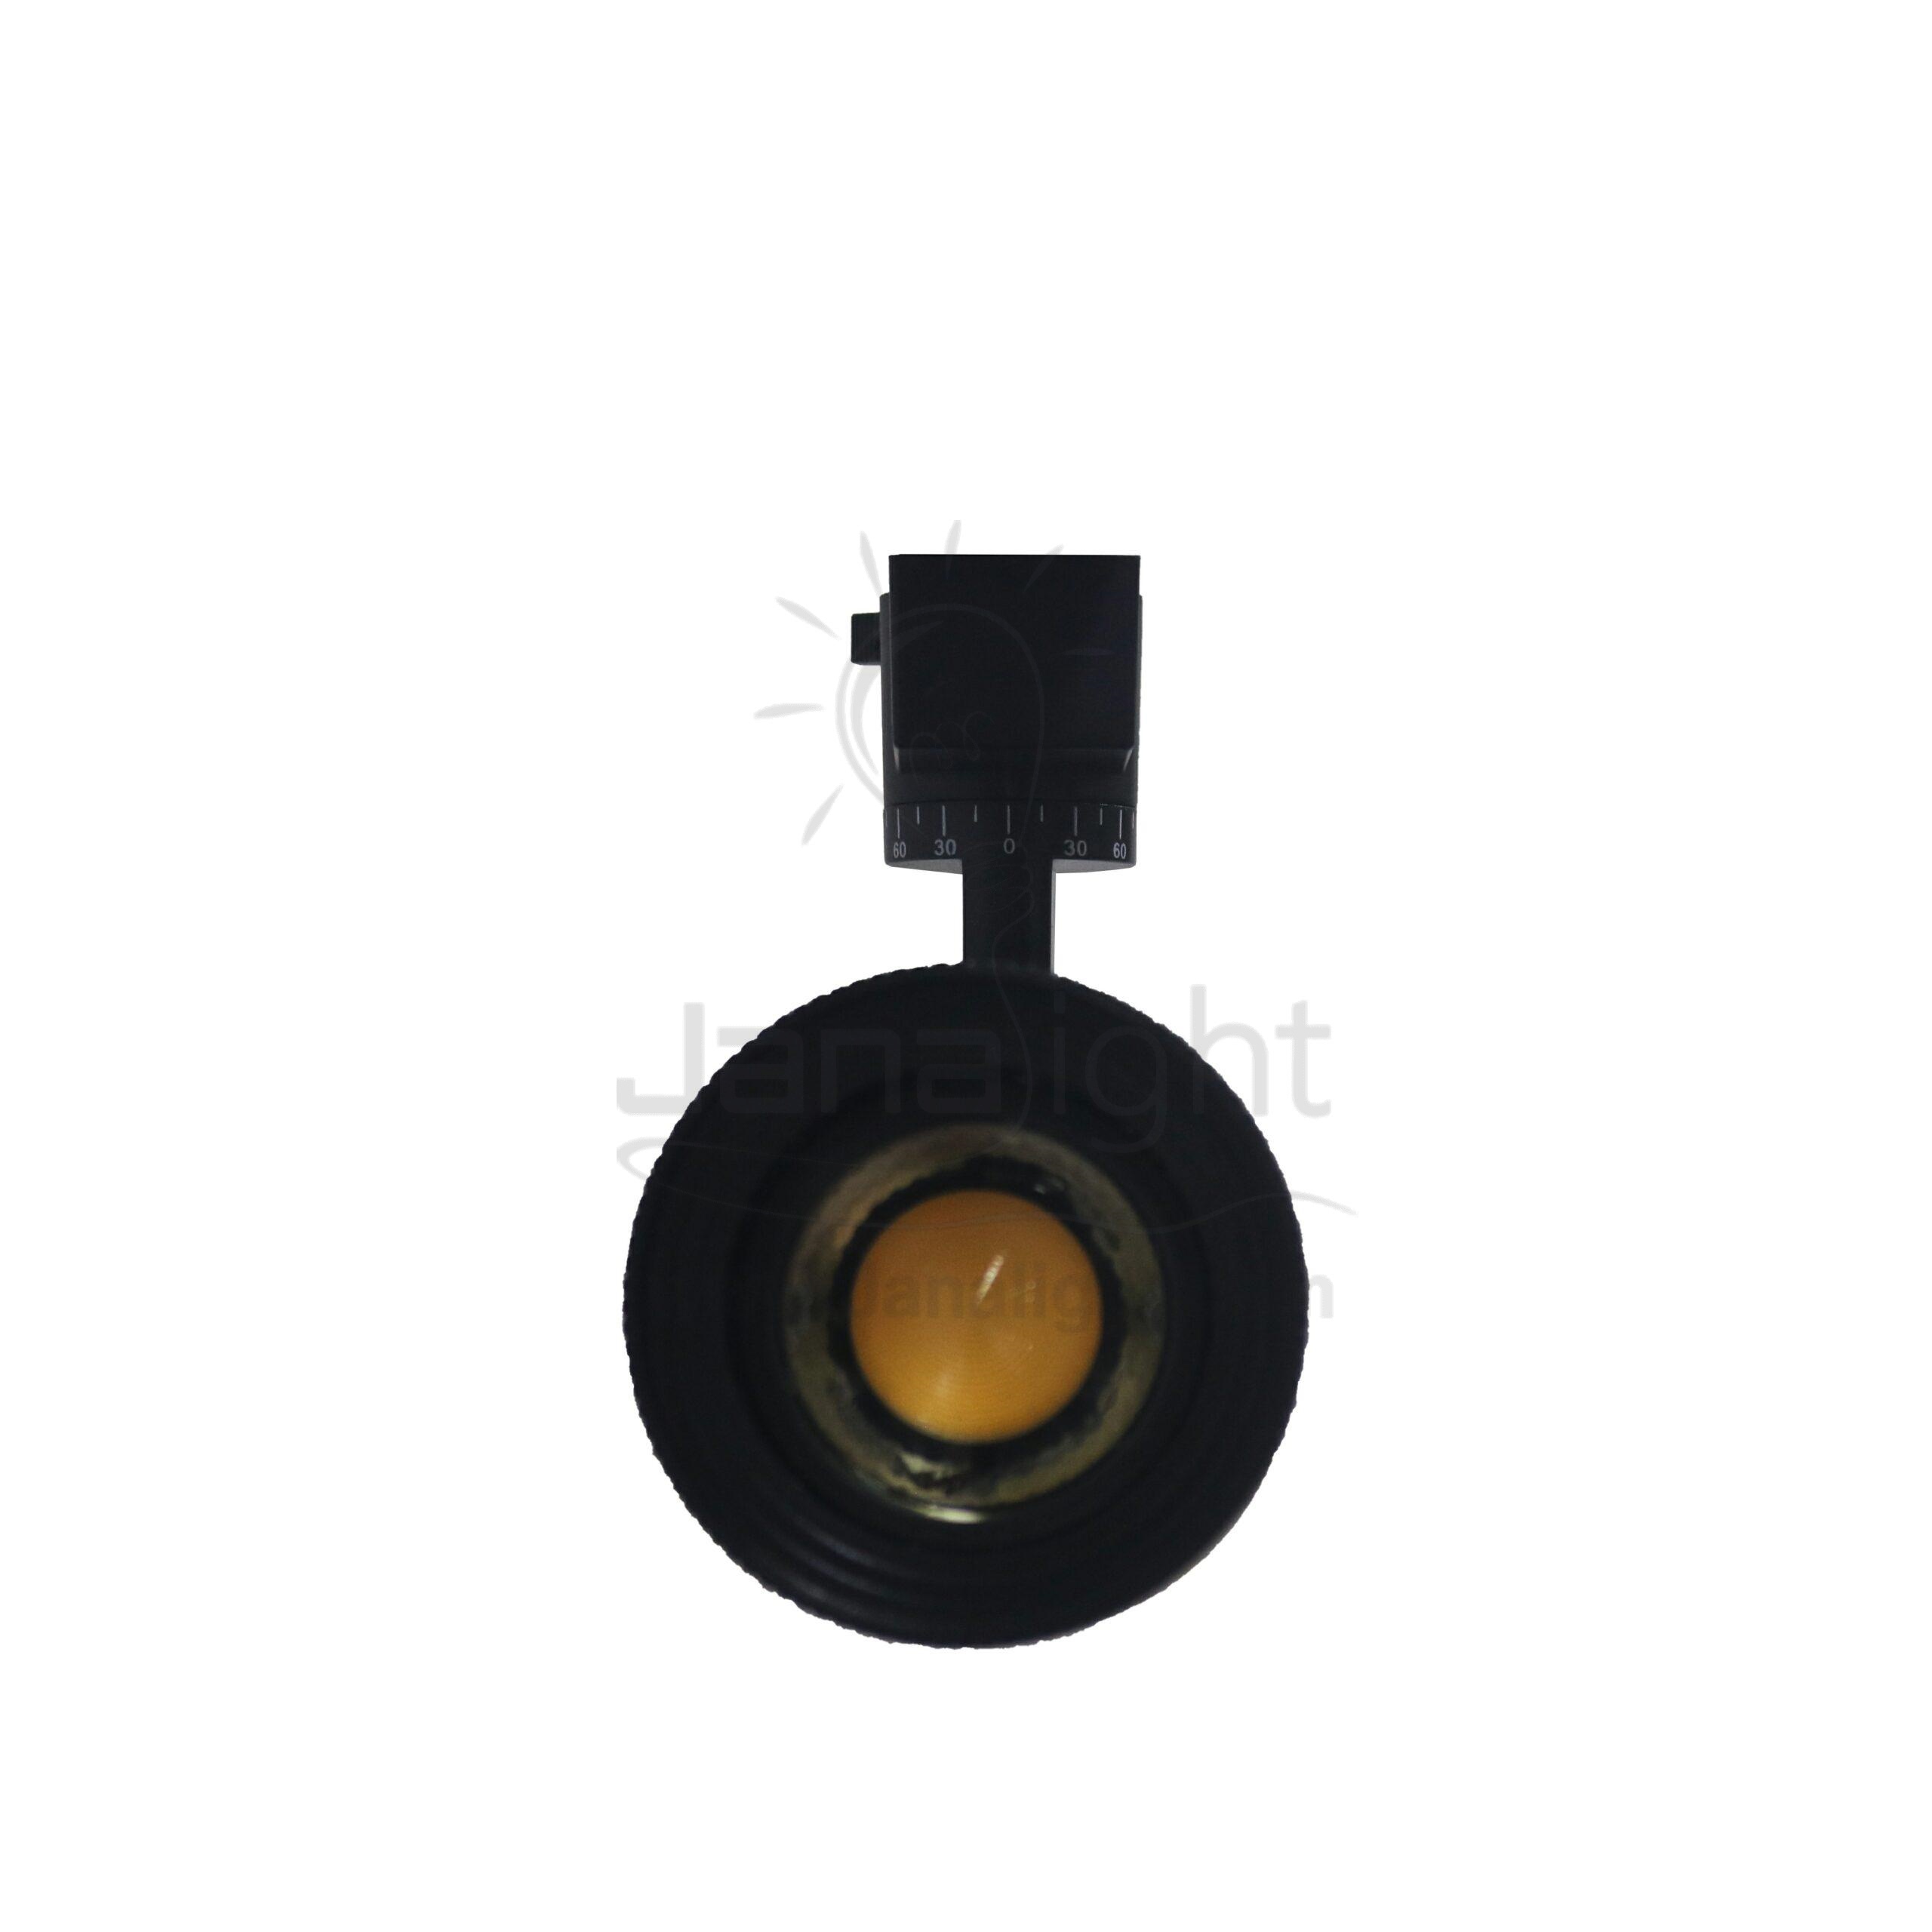 سبوت لايت تراك سبوت تراك 30 وات زووم عدسة اسود وورم QY58A Black Warm 30 Watt Zoom Lense Track Light Spot